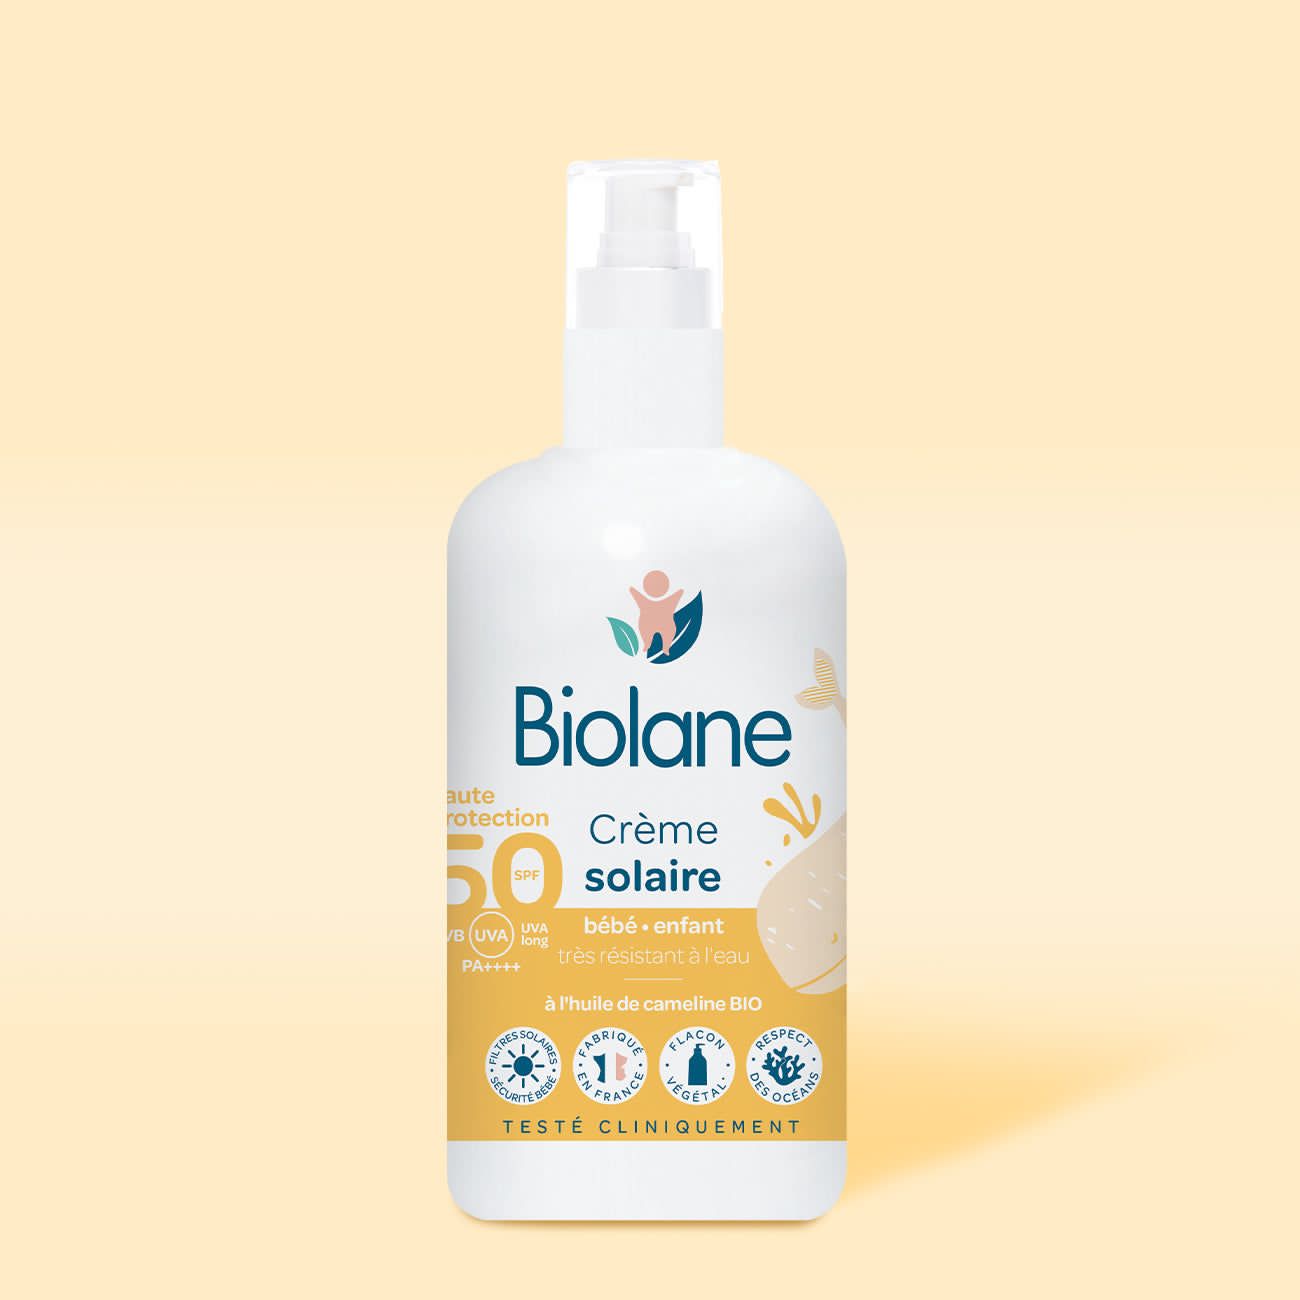 Biolane Creme Solaire Spf 50